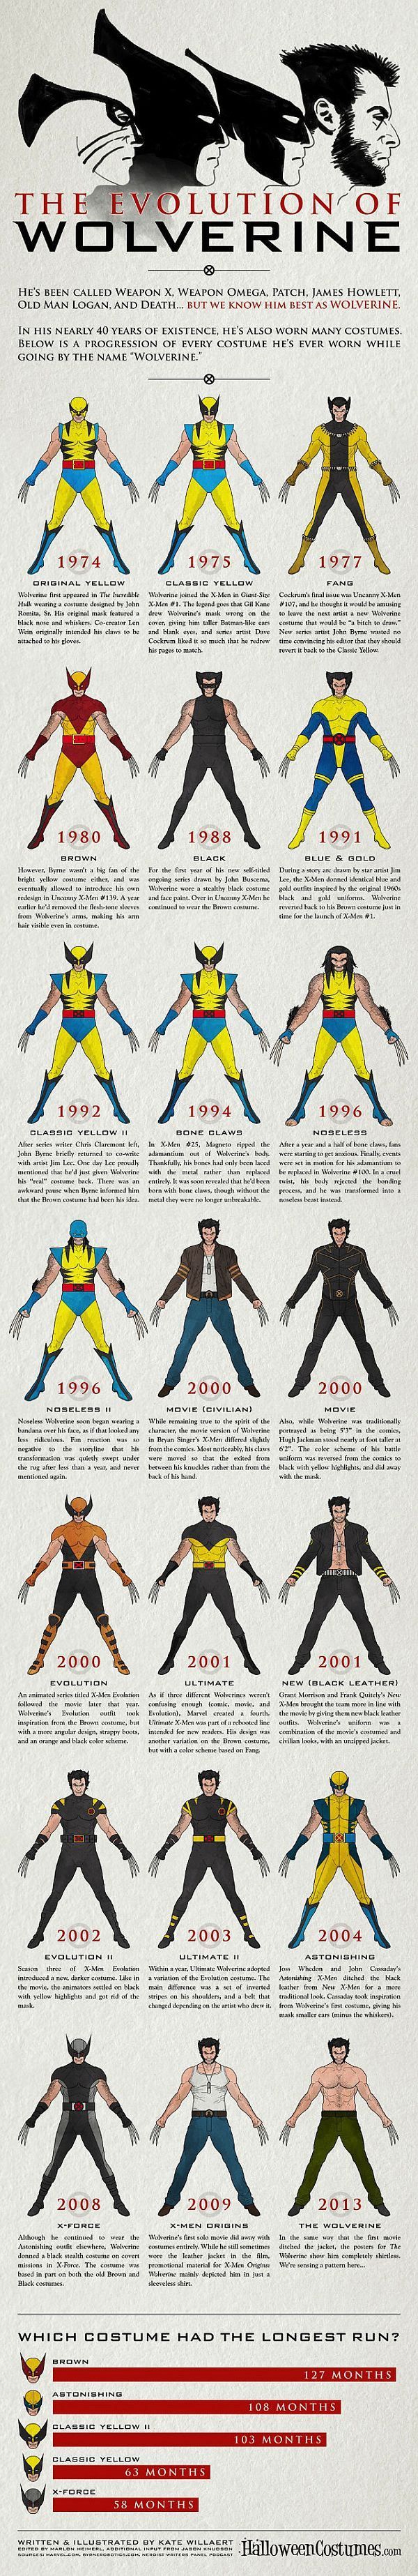 Ewolucja Wolverine'a